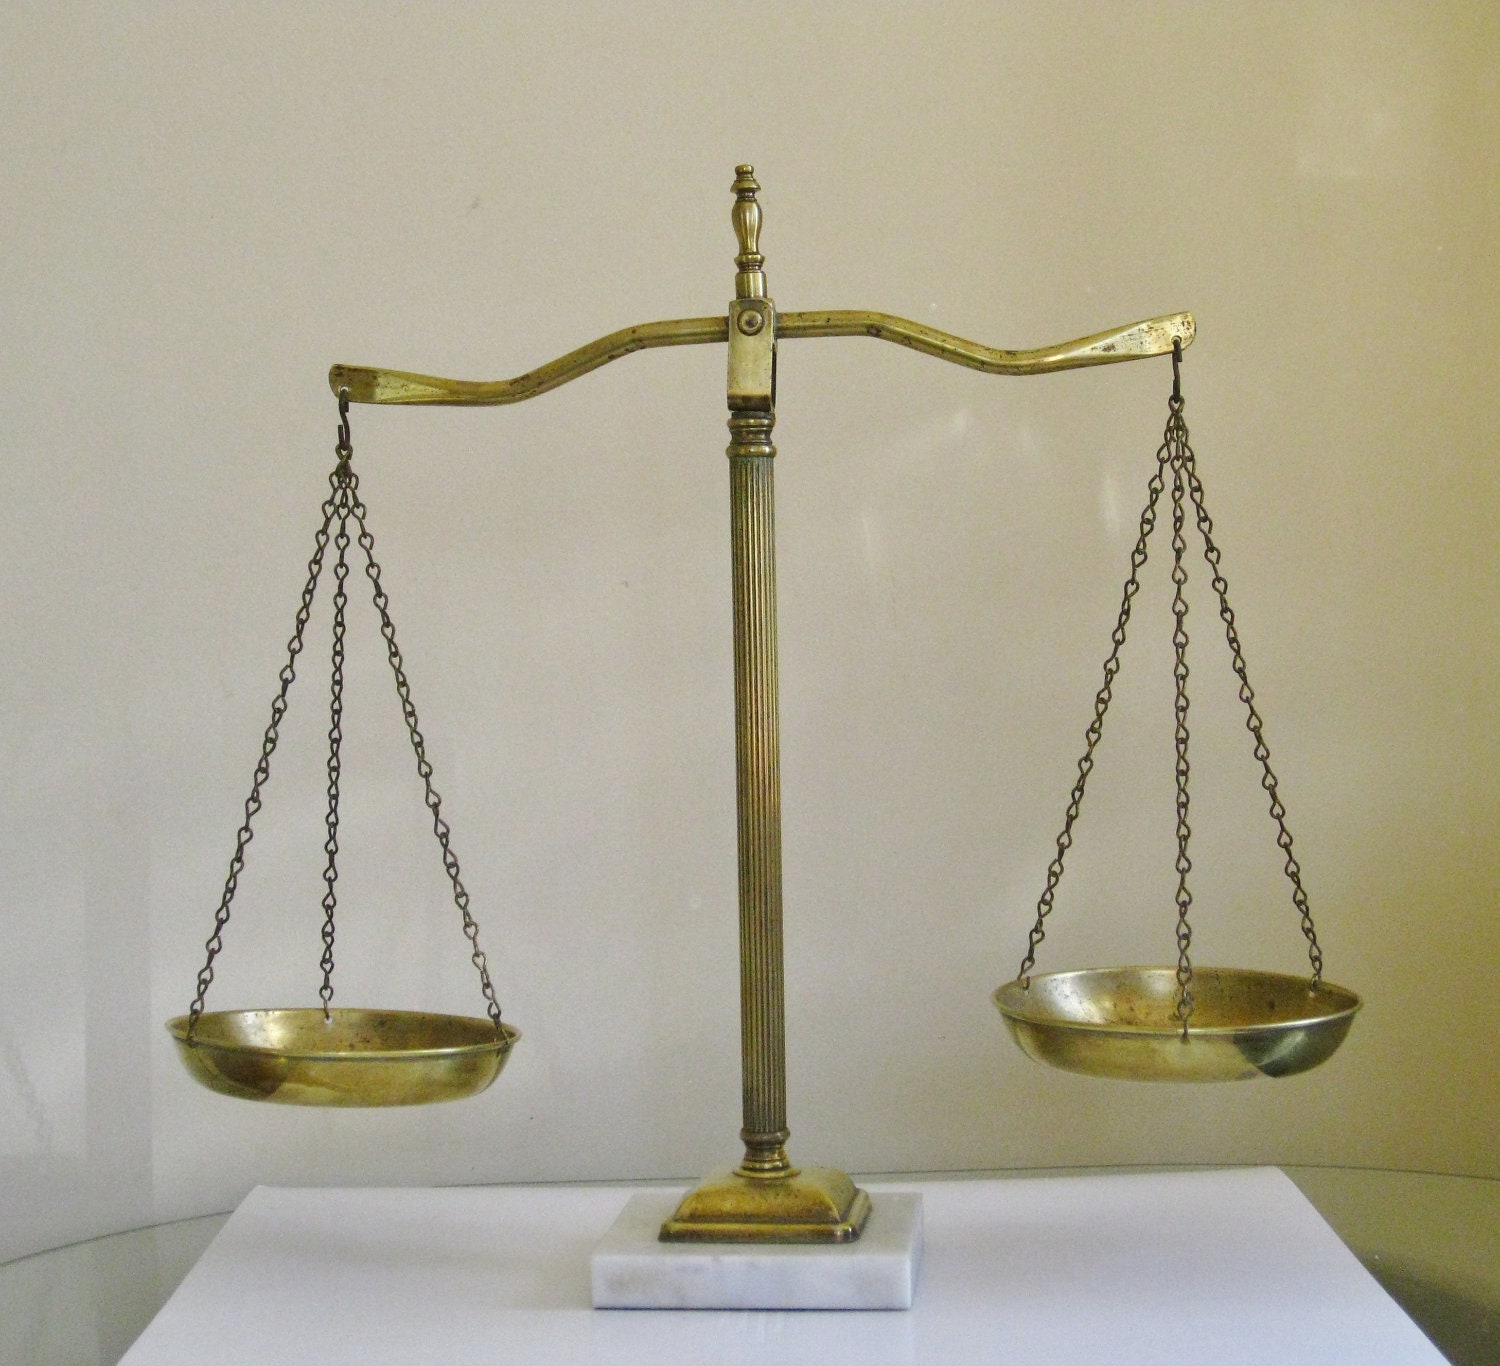 Что можно сделать весами. Судейские весы. Весы правосудия. Весы суд. Весы справедливости.